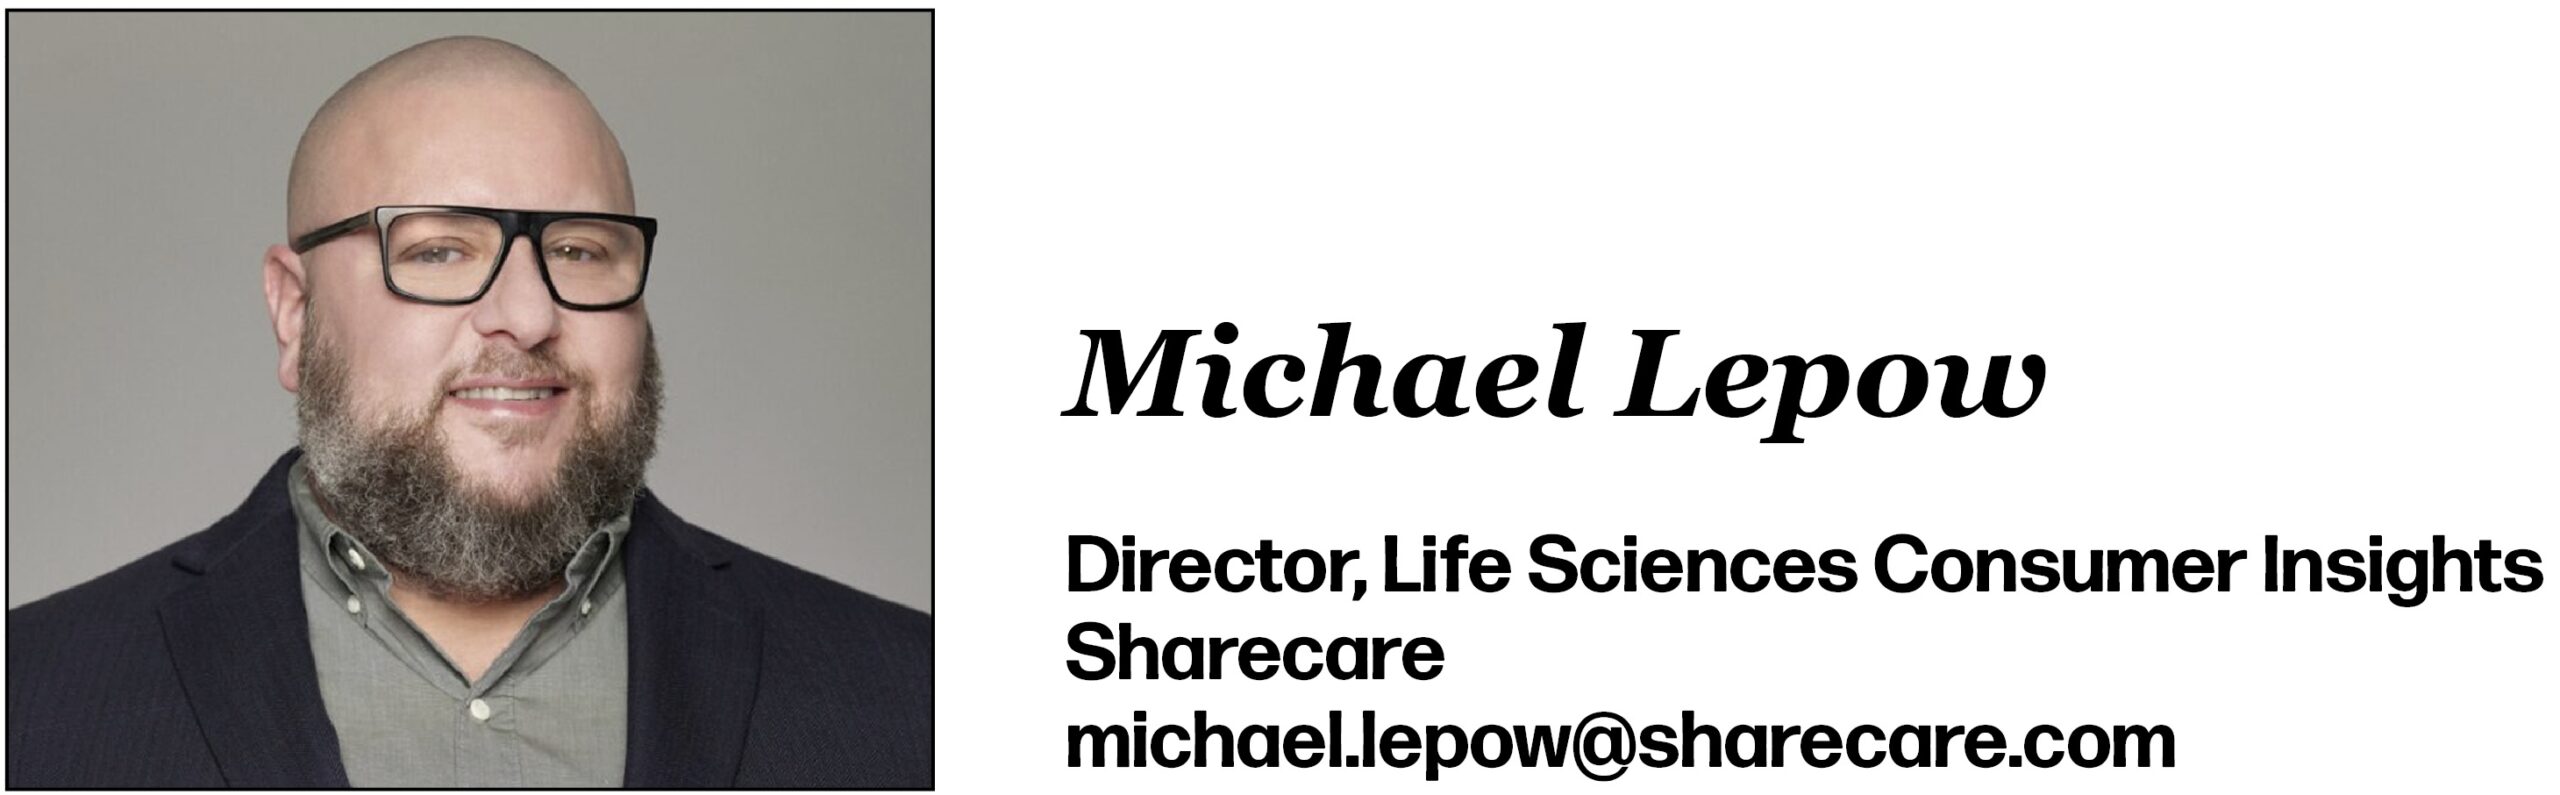 Michael Lepow Director, Life Sciences Consumer Insights Sharecare michael.lepow@sharecare.com